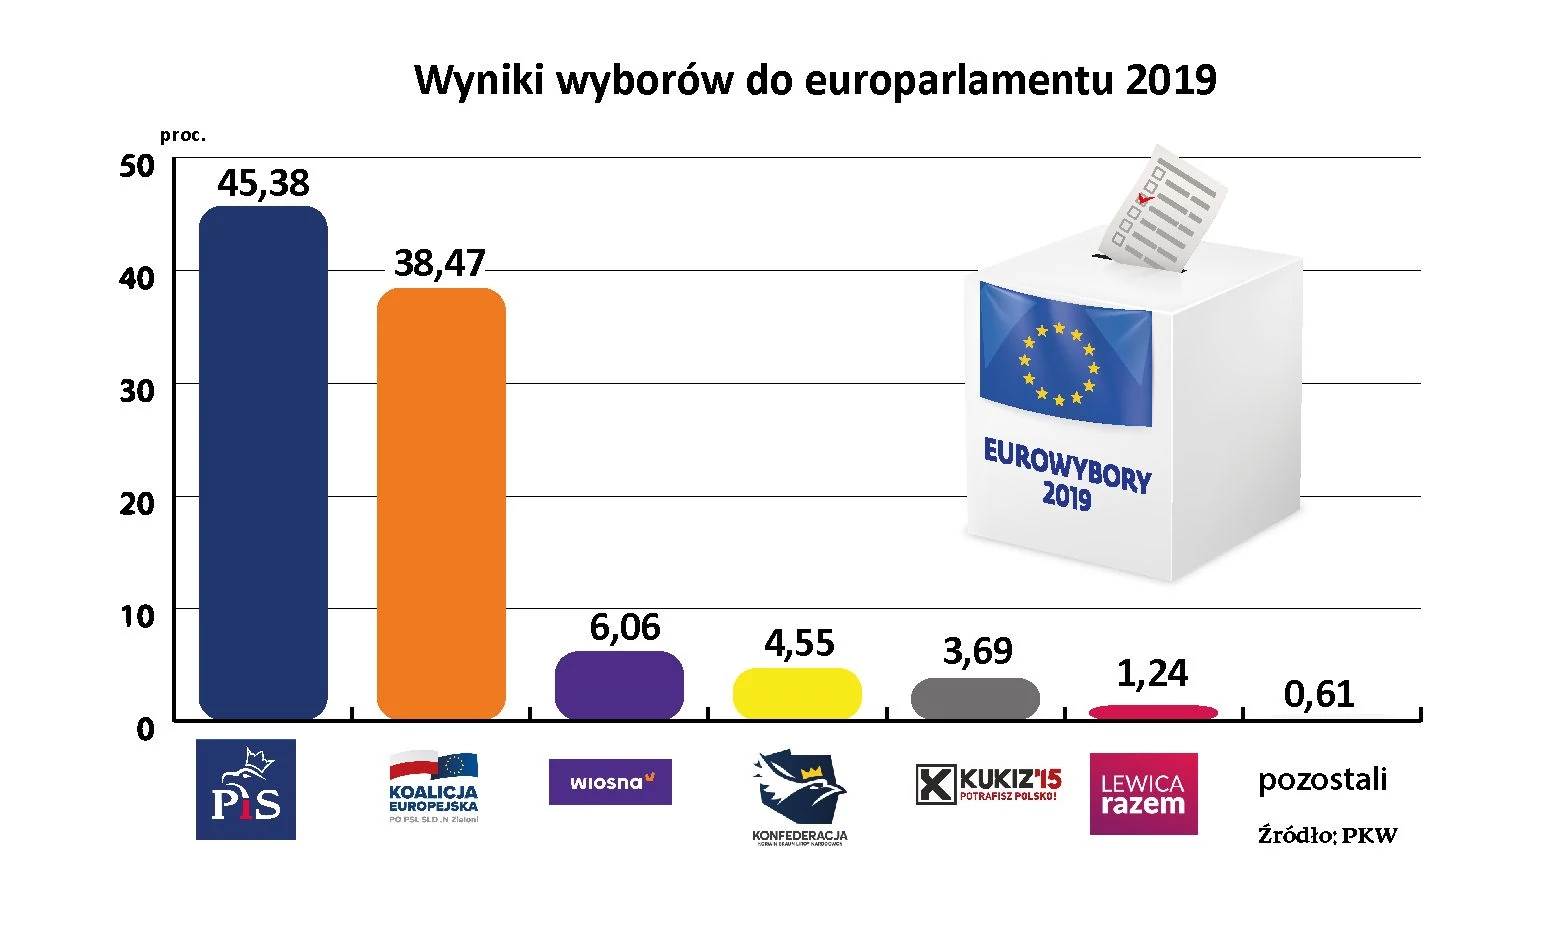 Oto wyniki wyborów do europarlamentu 2019 [OFICJALNE DANE PKW] - Forsal.pl